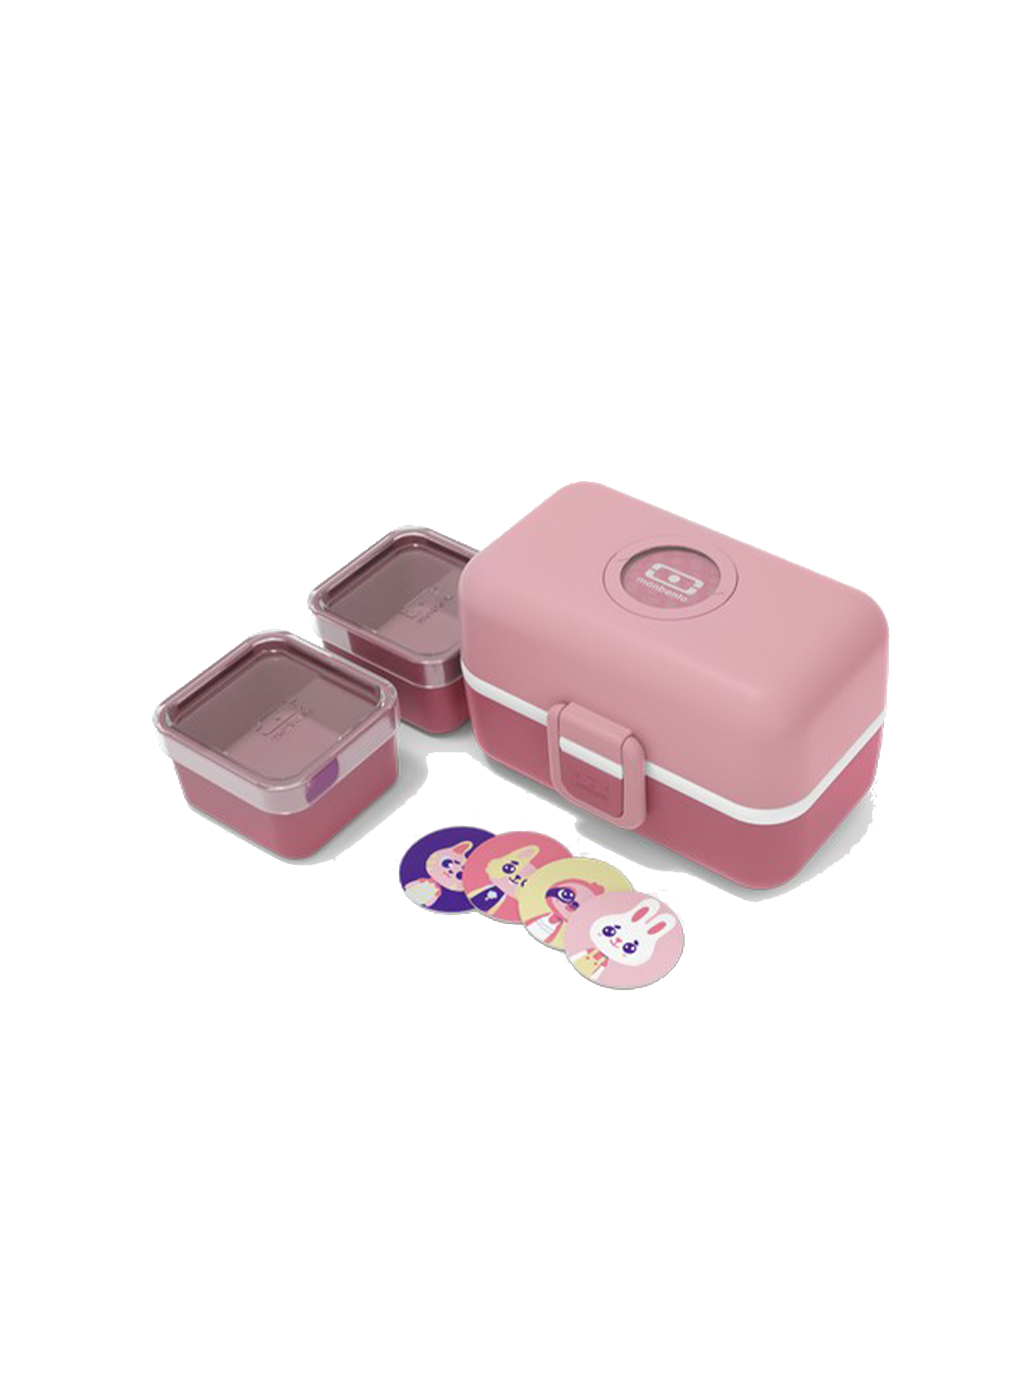 Lunchbox dziecięcy bento box Tresor